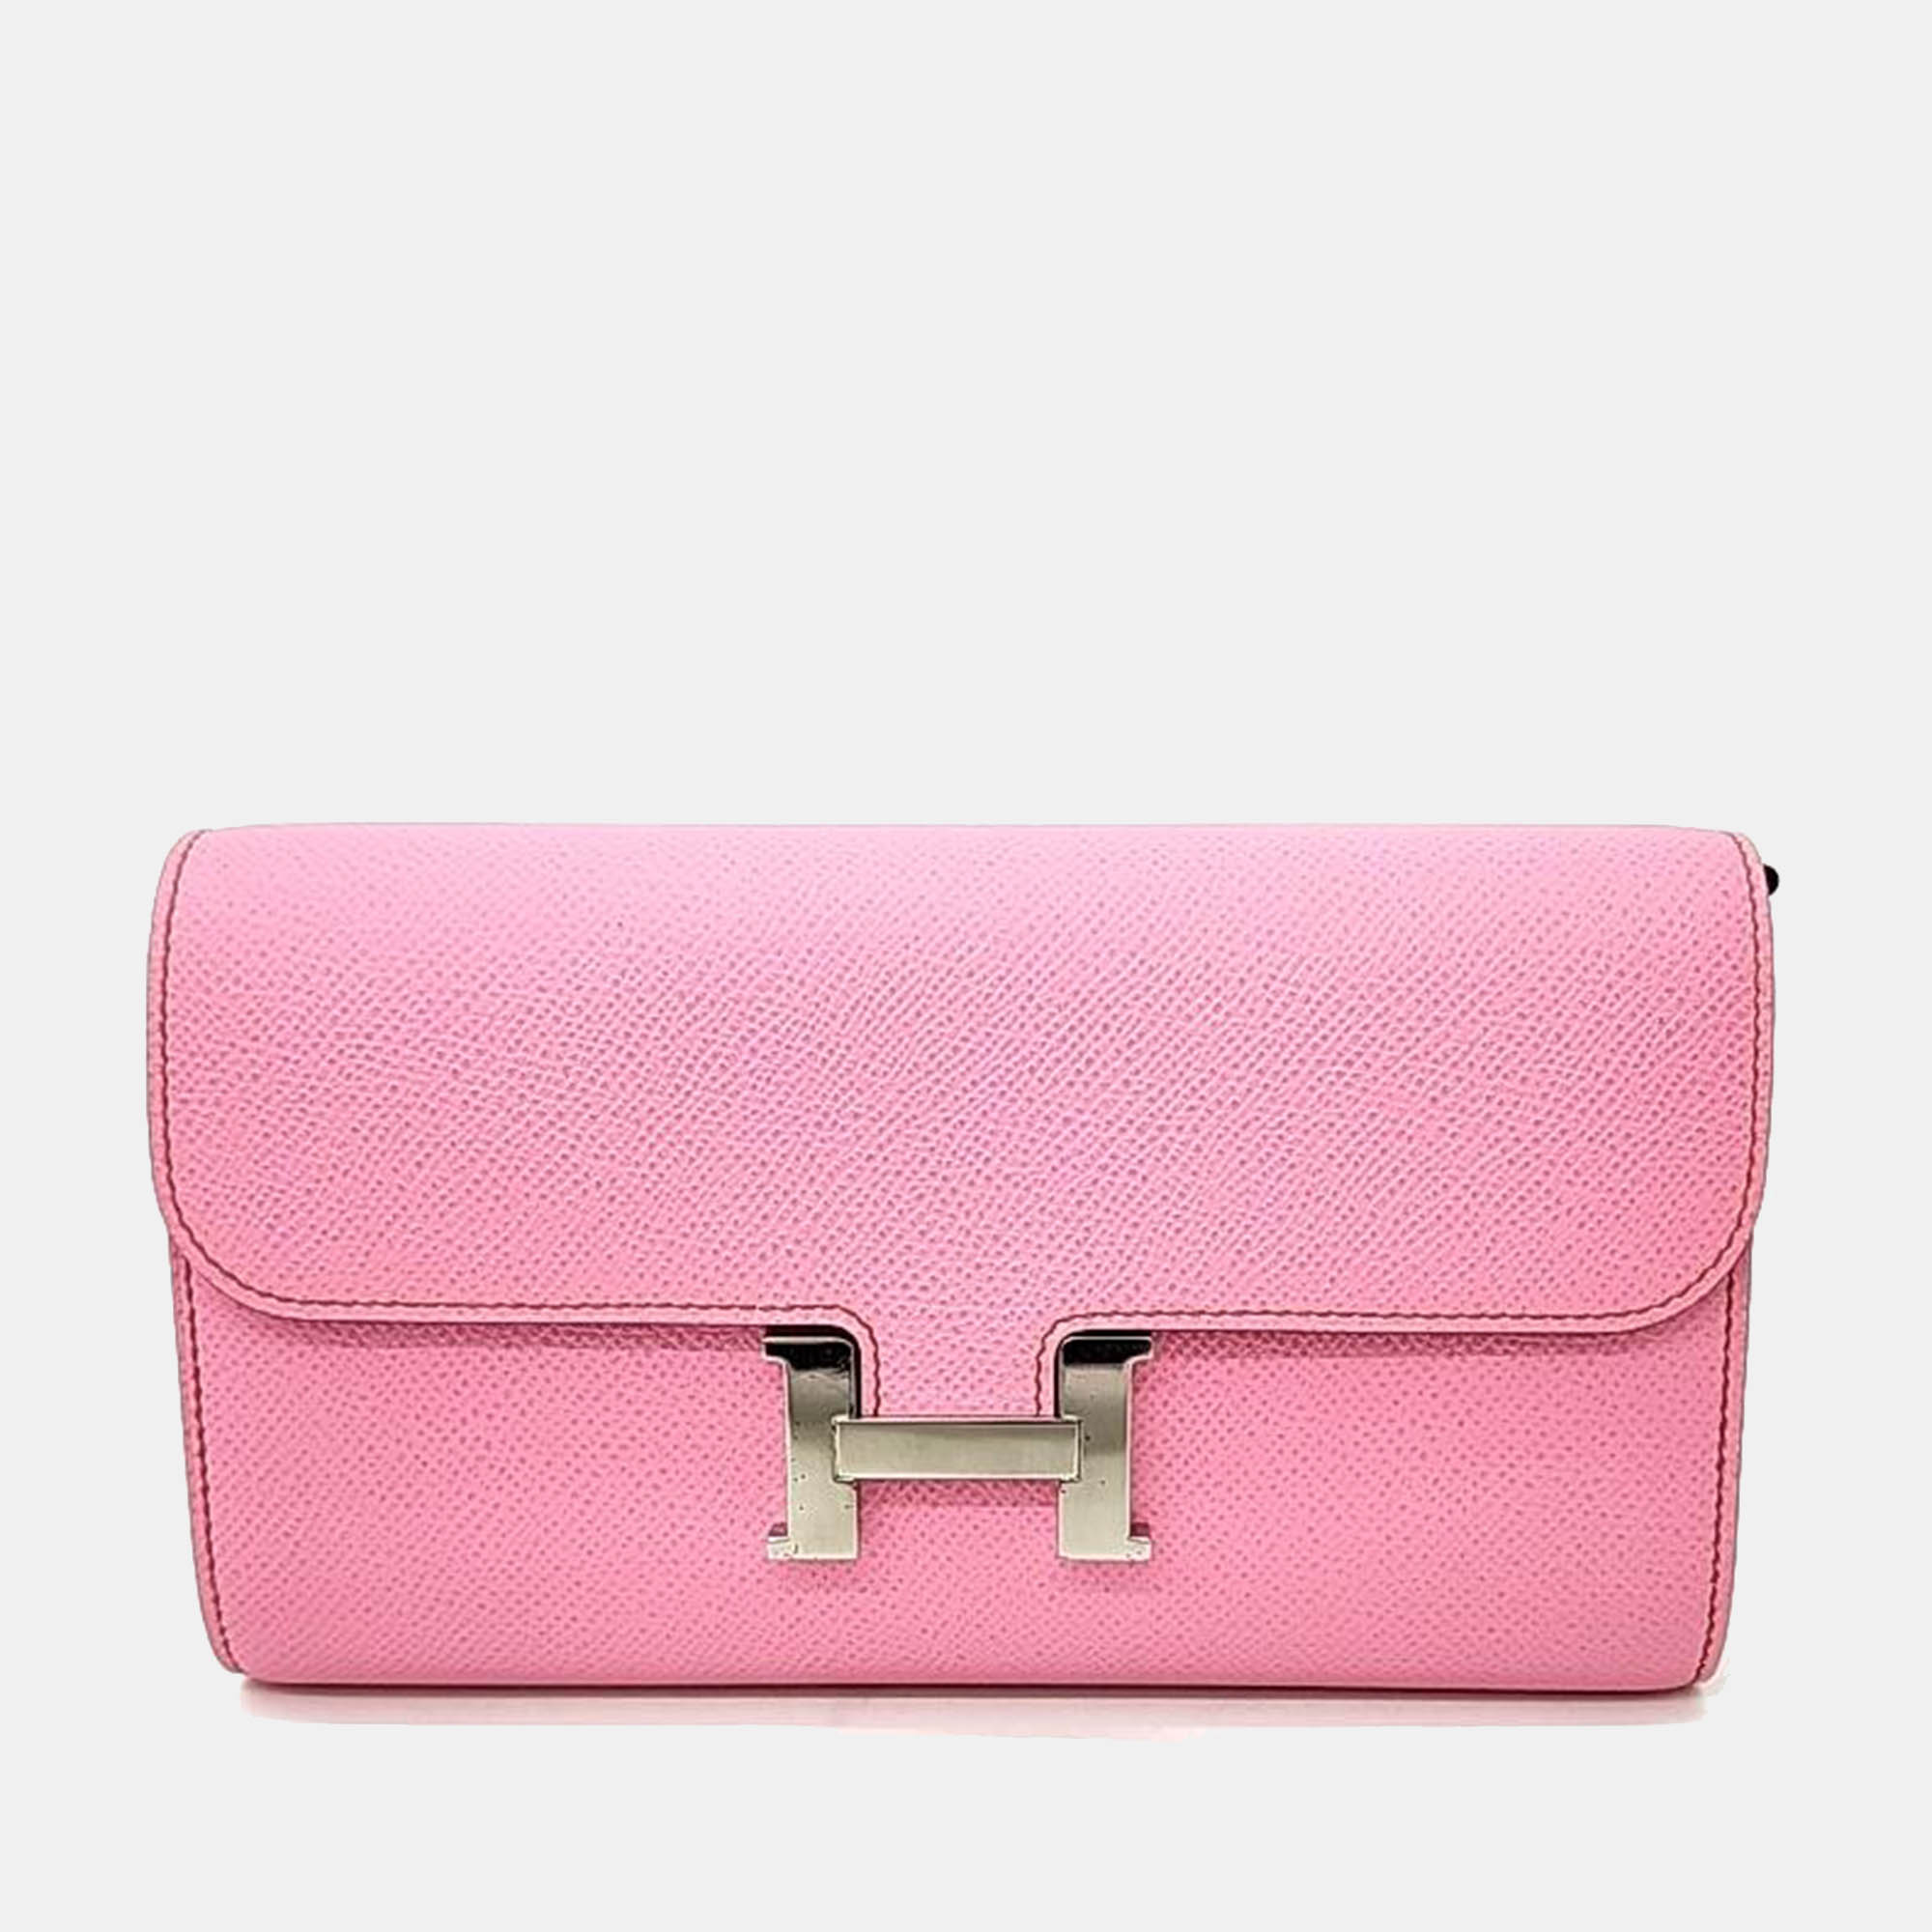 Hermes Pink Leather Constance Long Togo Bag